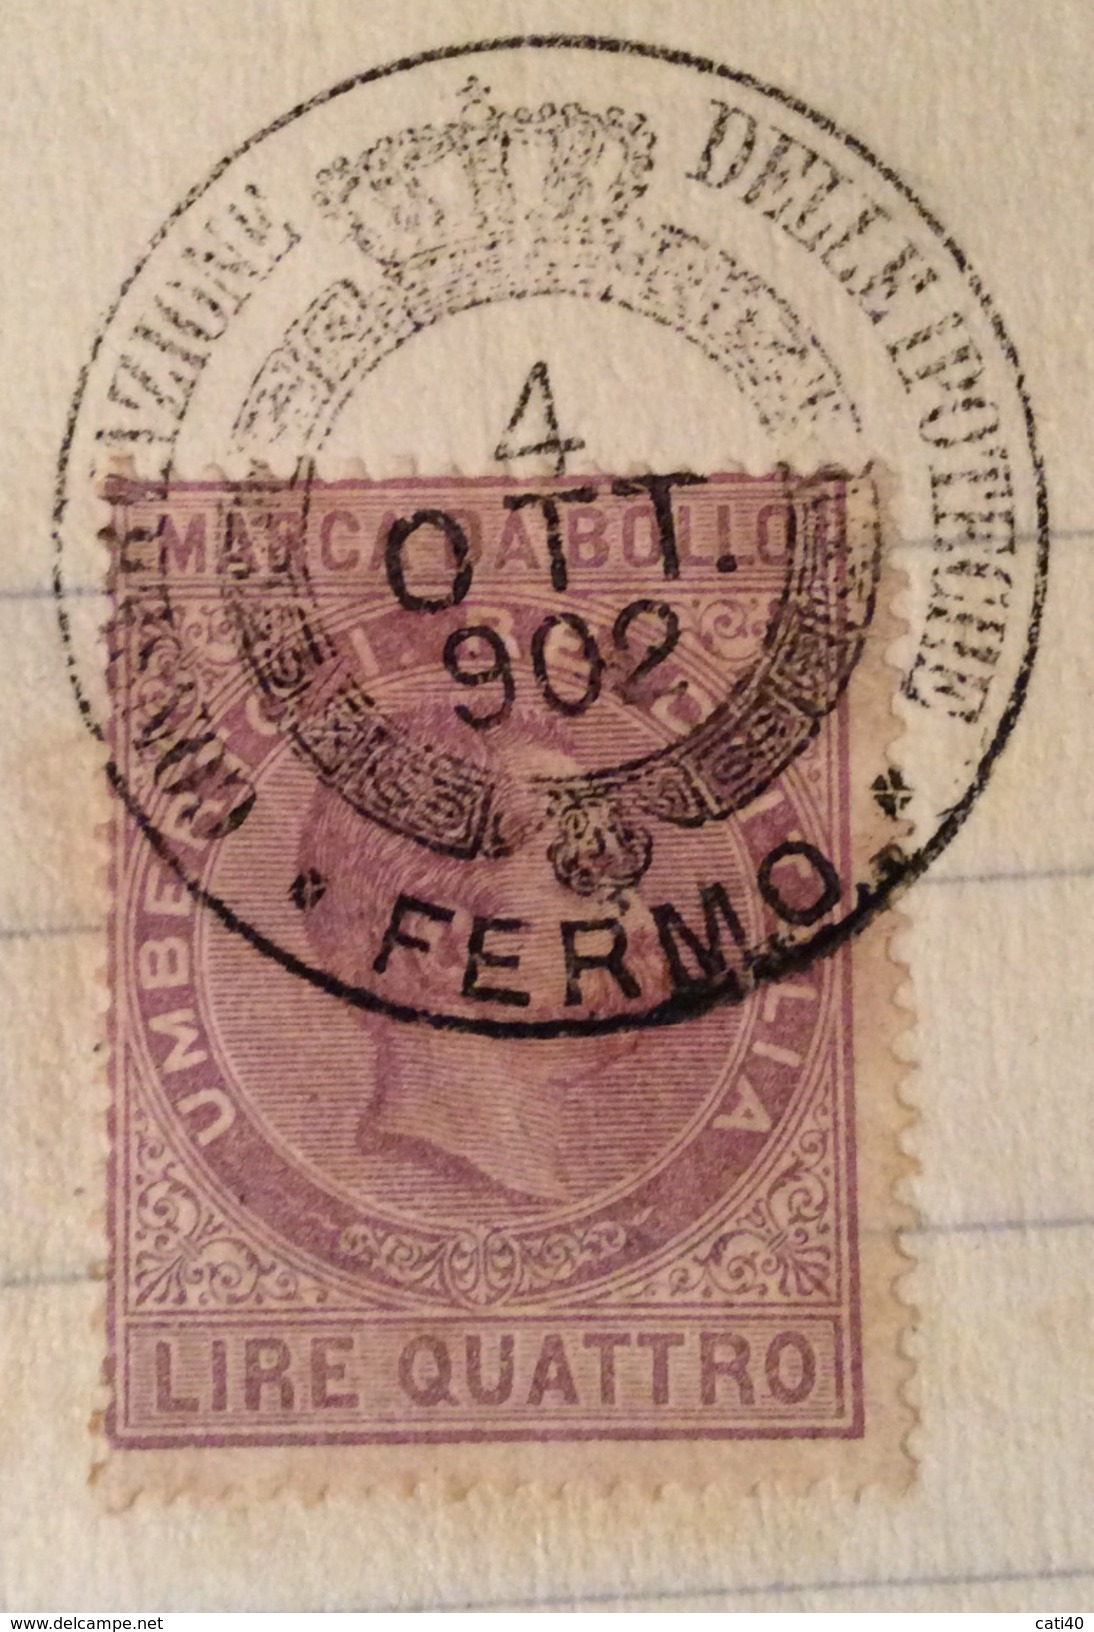 MARCA DA BOLLO UMBERTO LIRE QUATTRO SU DOCUMENTO COMPLETO FERMO 4/10/1902 R - Fiscali